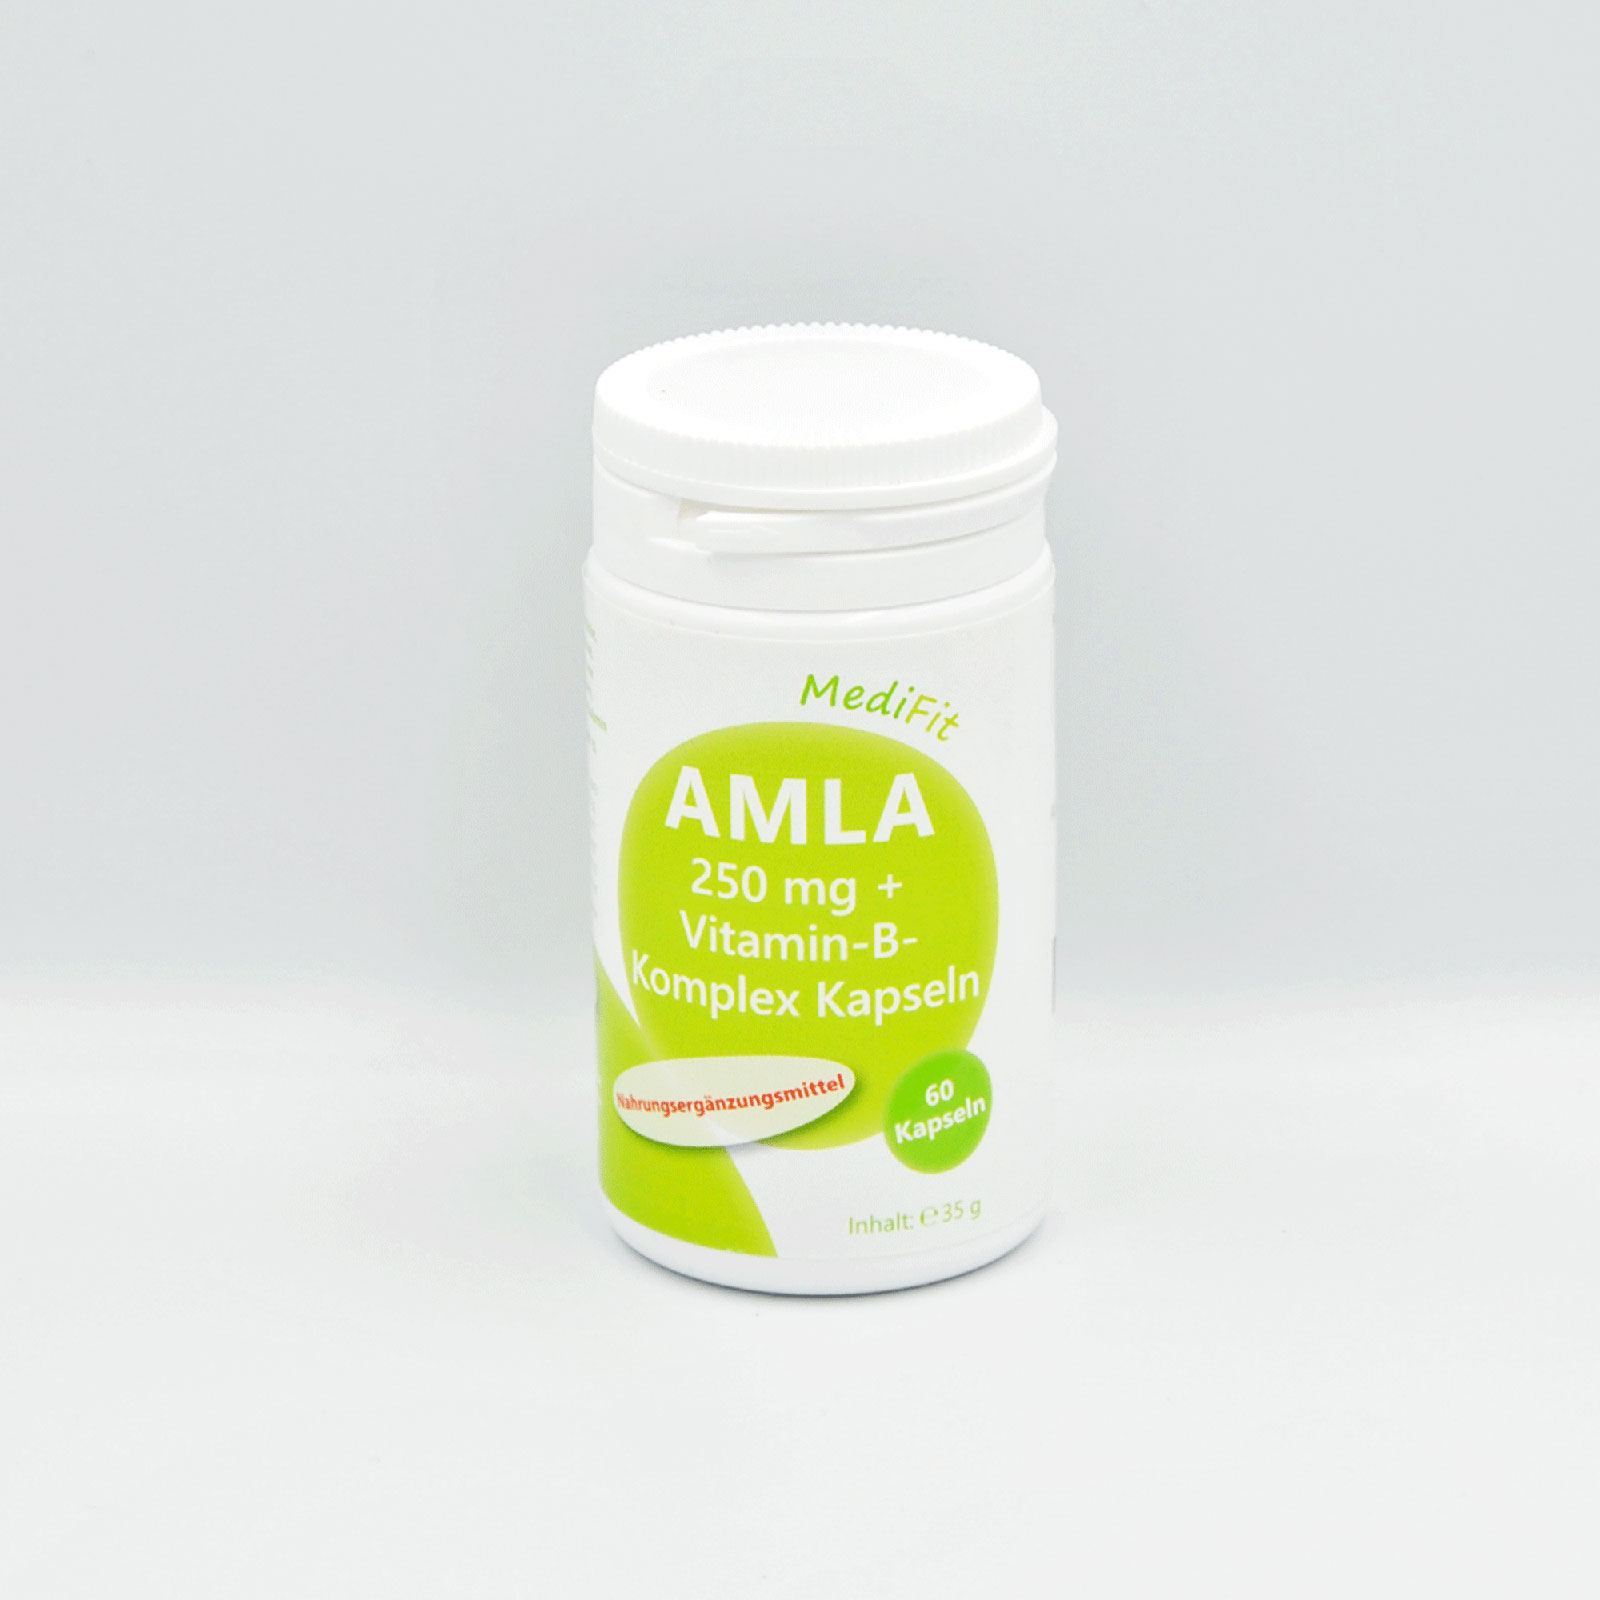 Amla 250mg + Vitamin-B-Komplex Kapseln